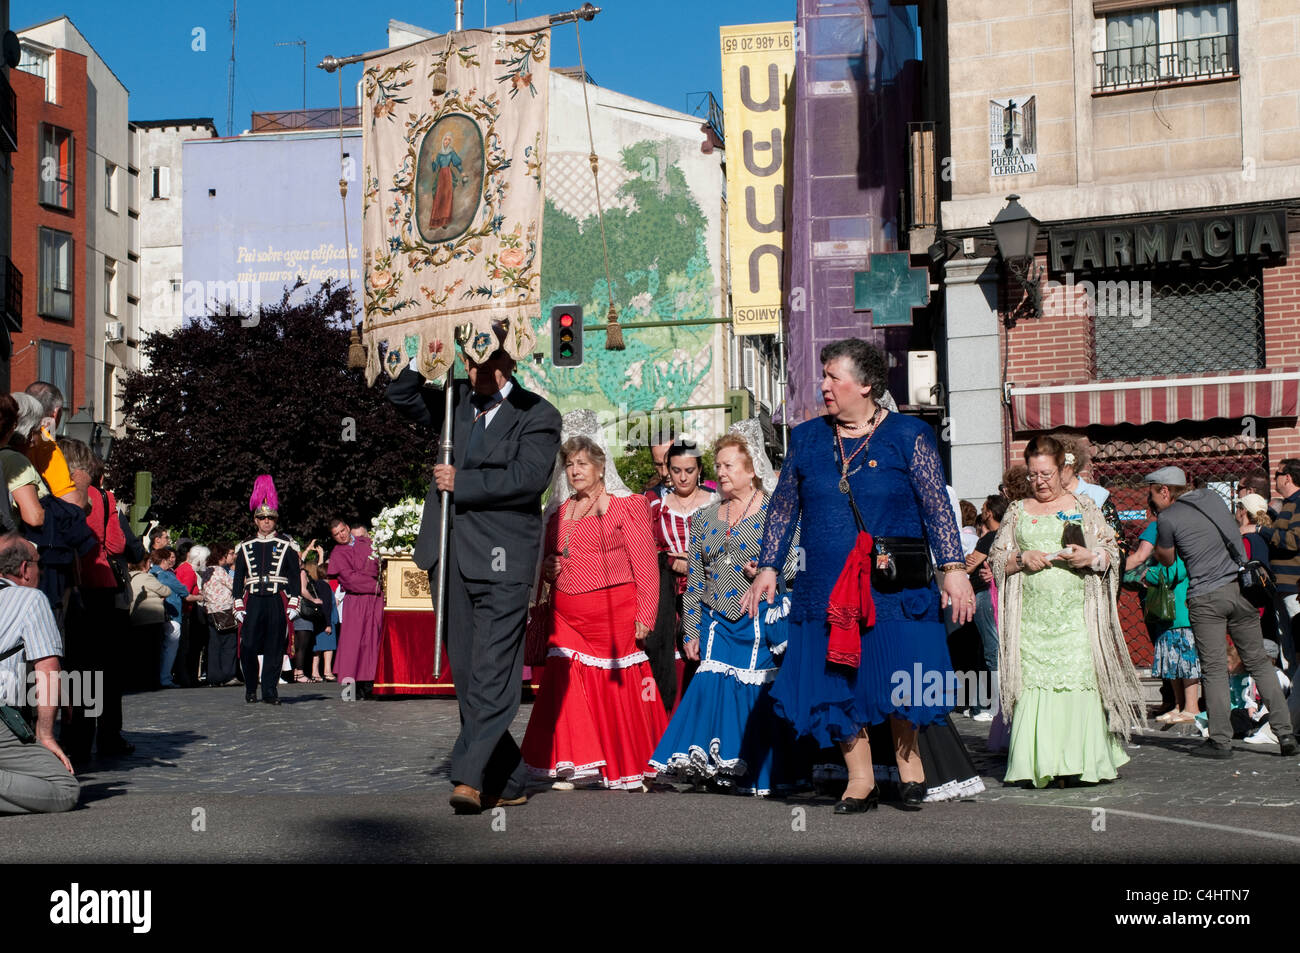 Persone vestite con abiti tradizionali durante la processione religiosa per la festa di San Isidro, Madrid, Spagna Foto Stock